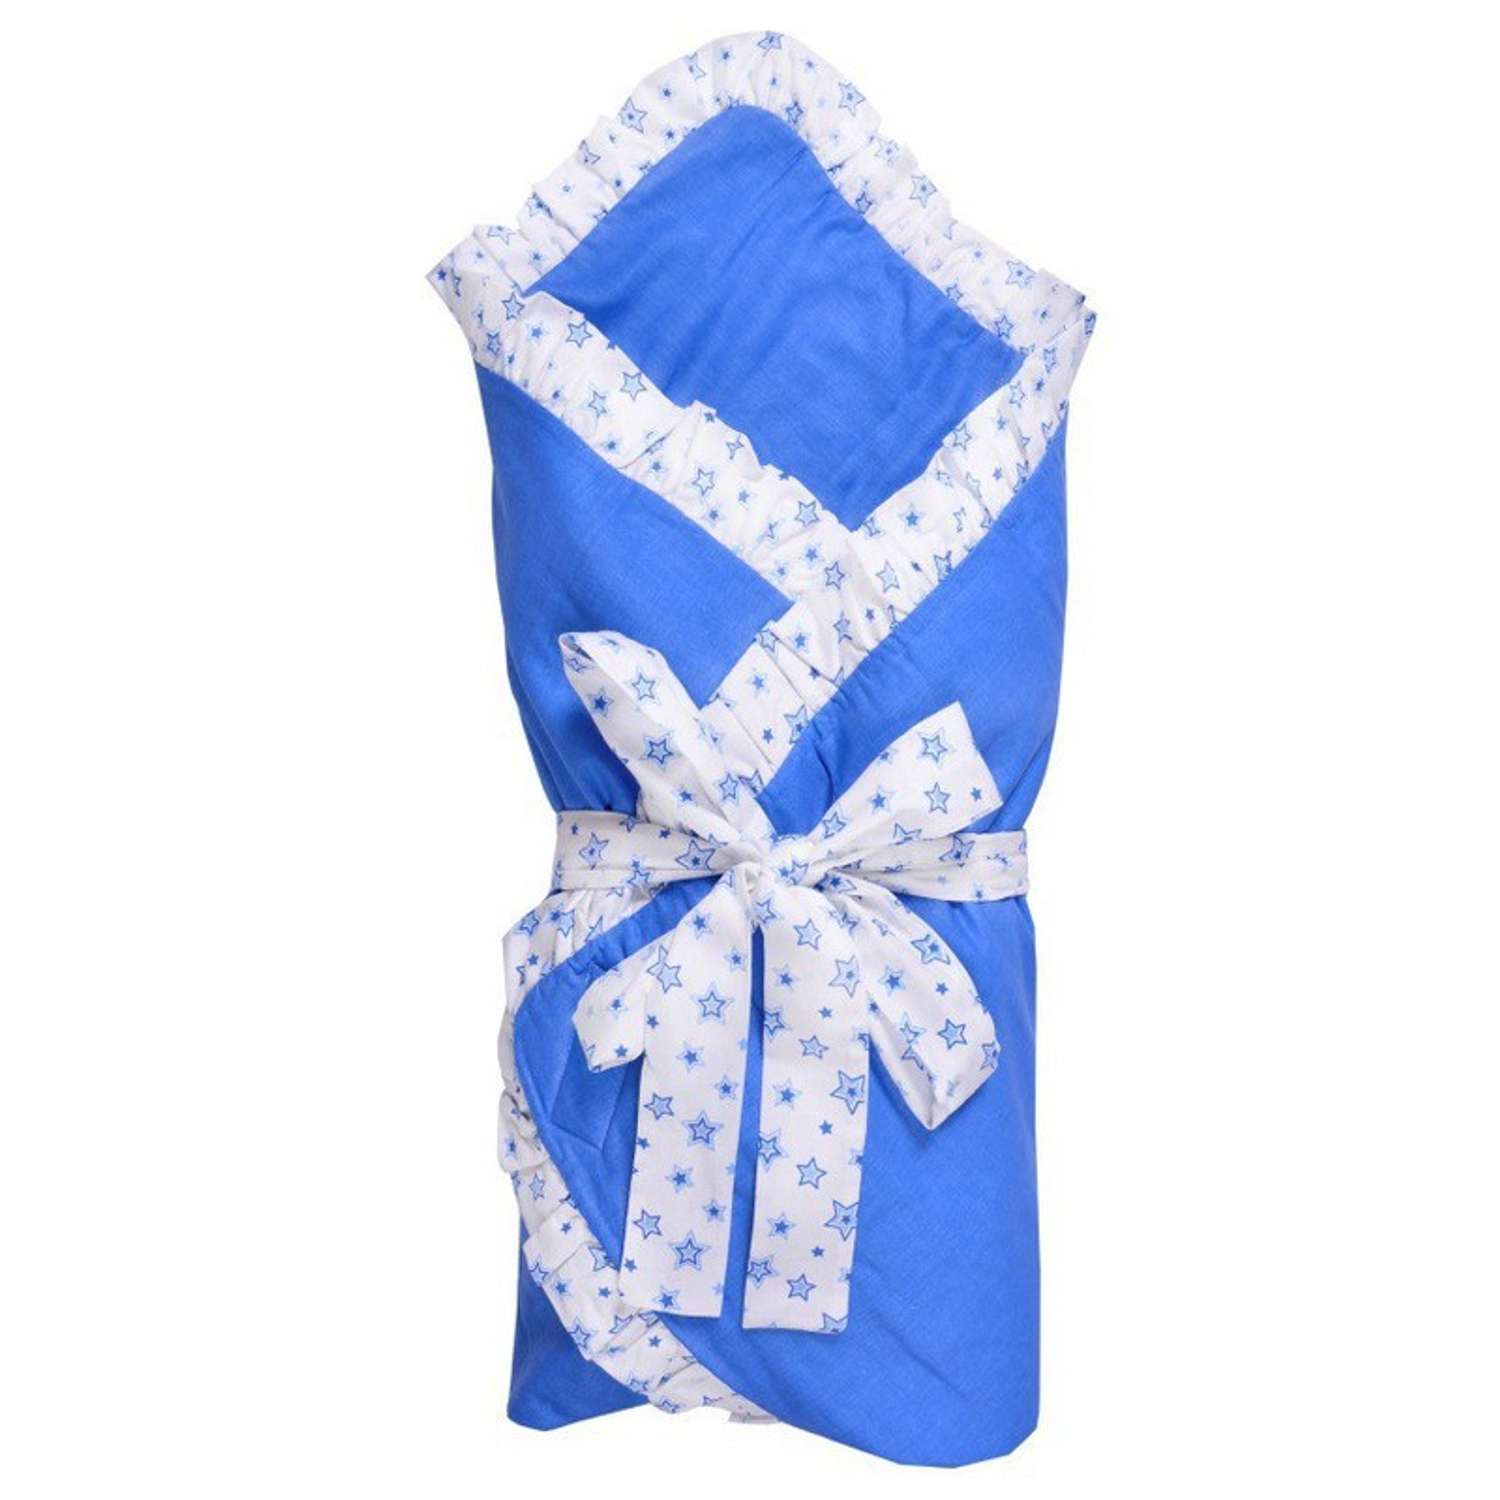 Одеяло Эдельвейс на липучке Голубое - фото 2